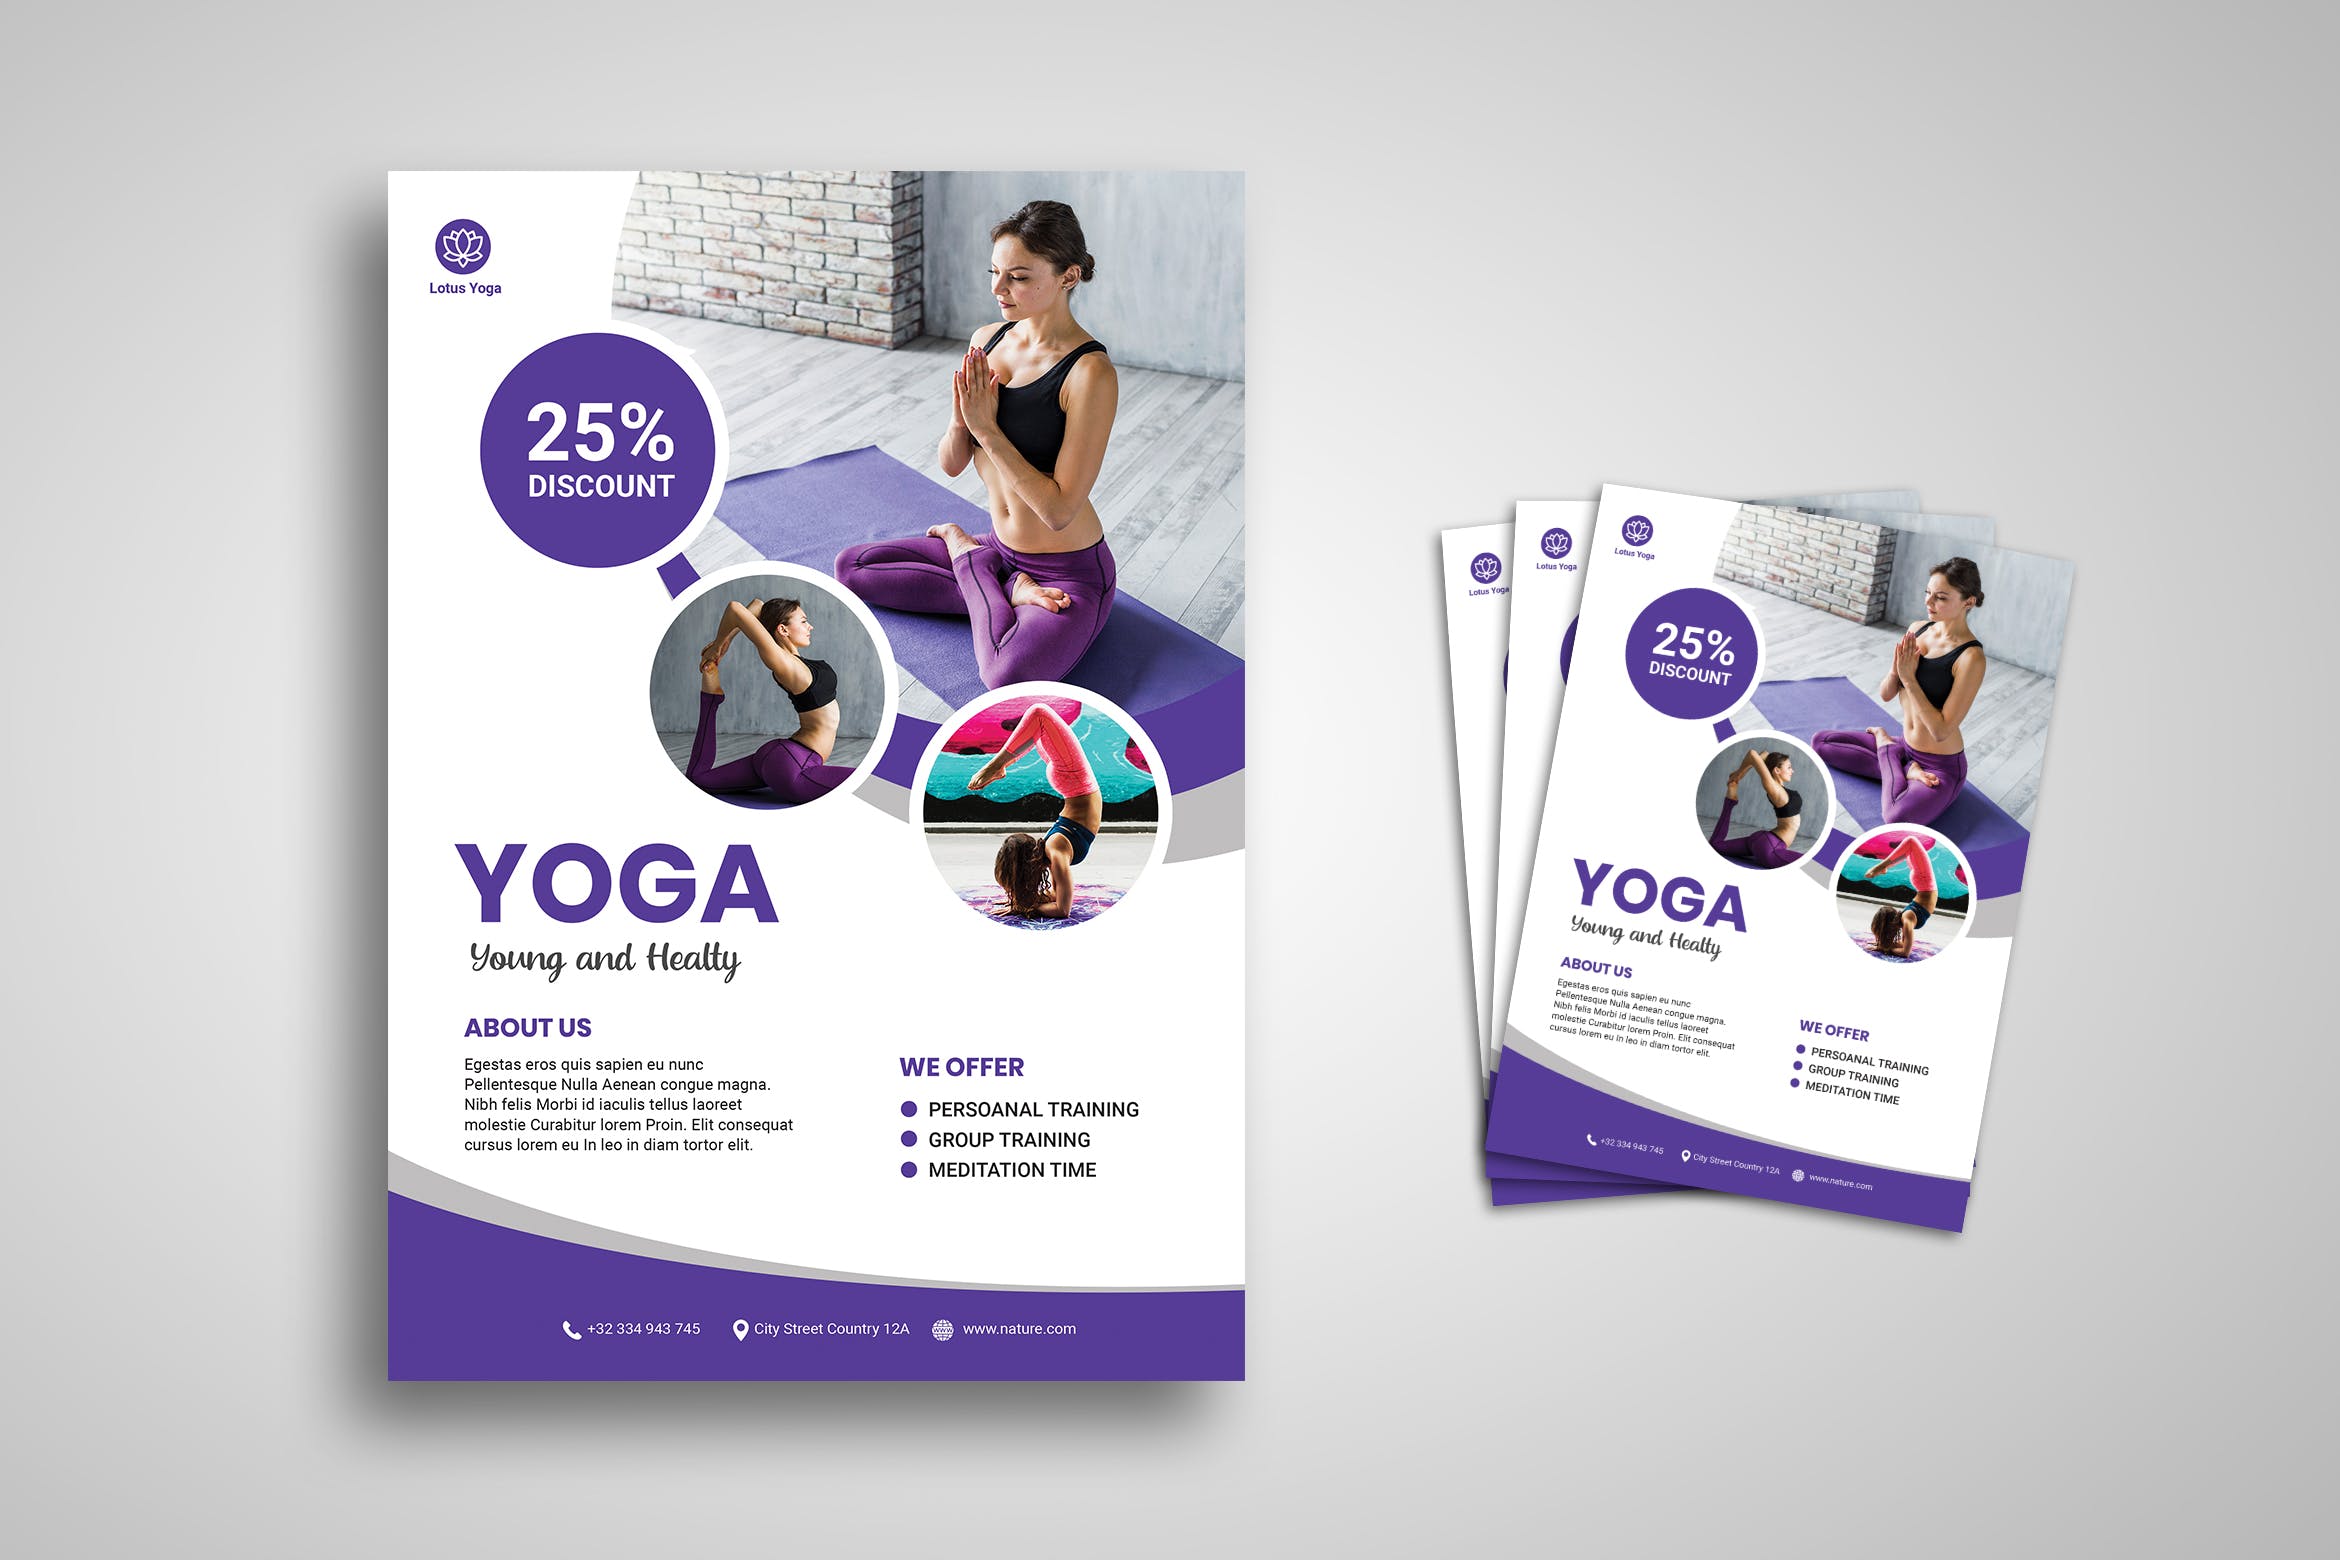 瑜伽培训班/培训机构宣传海报传单设计模板 Yoga Flyer插图